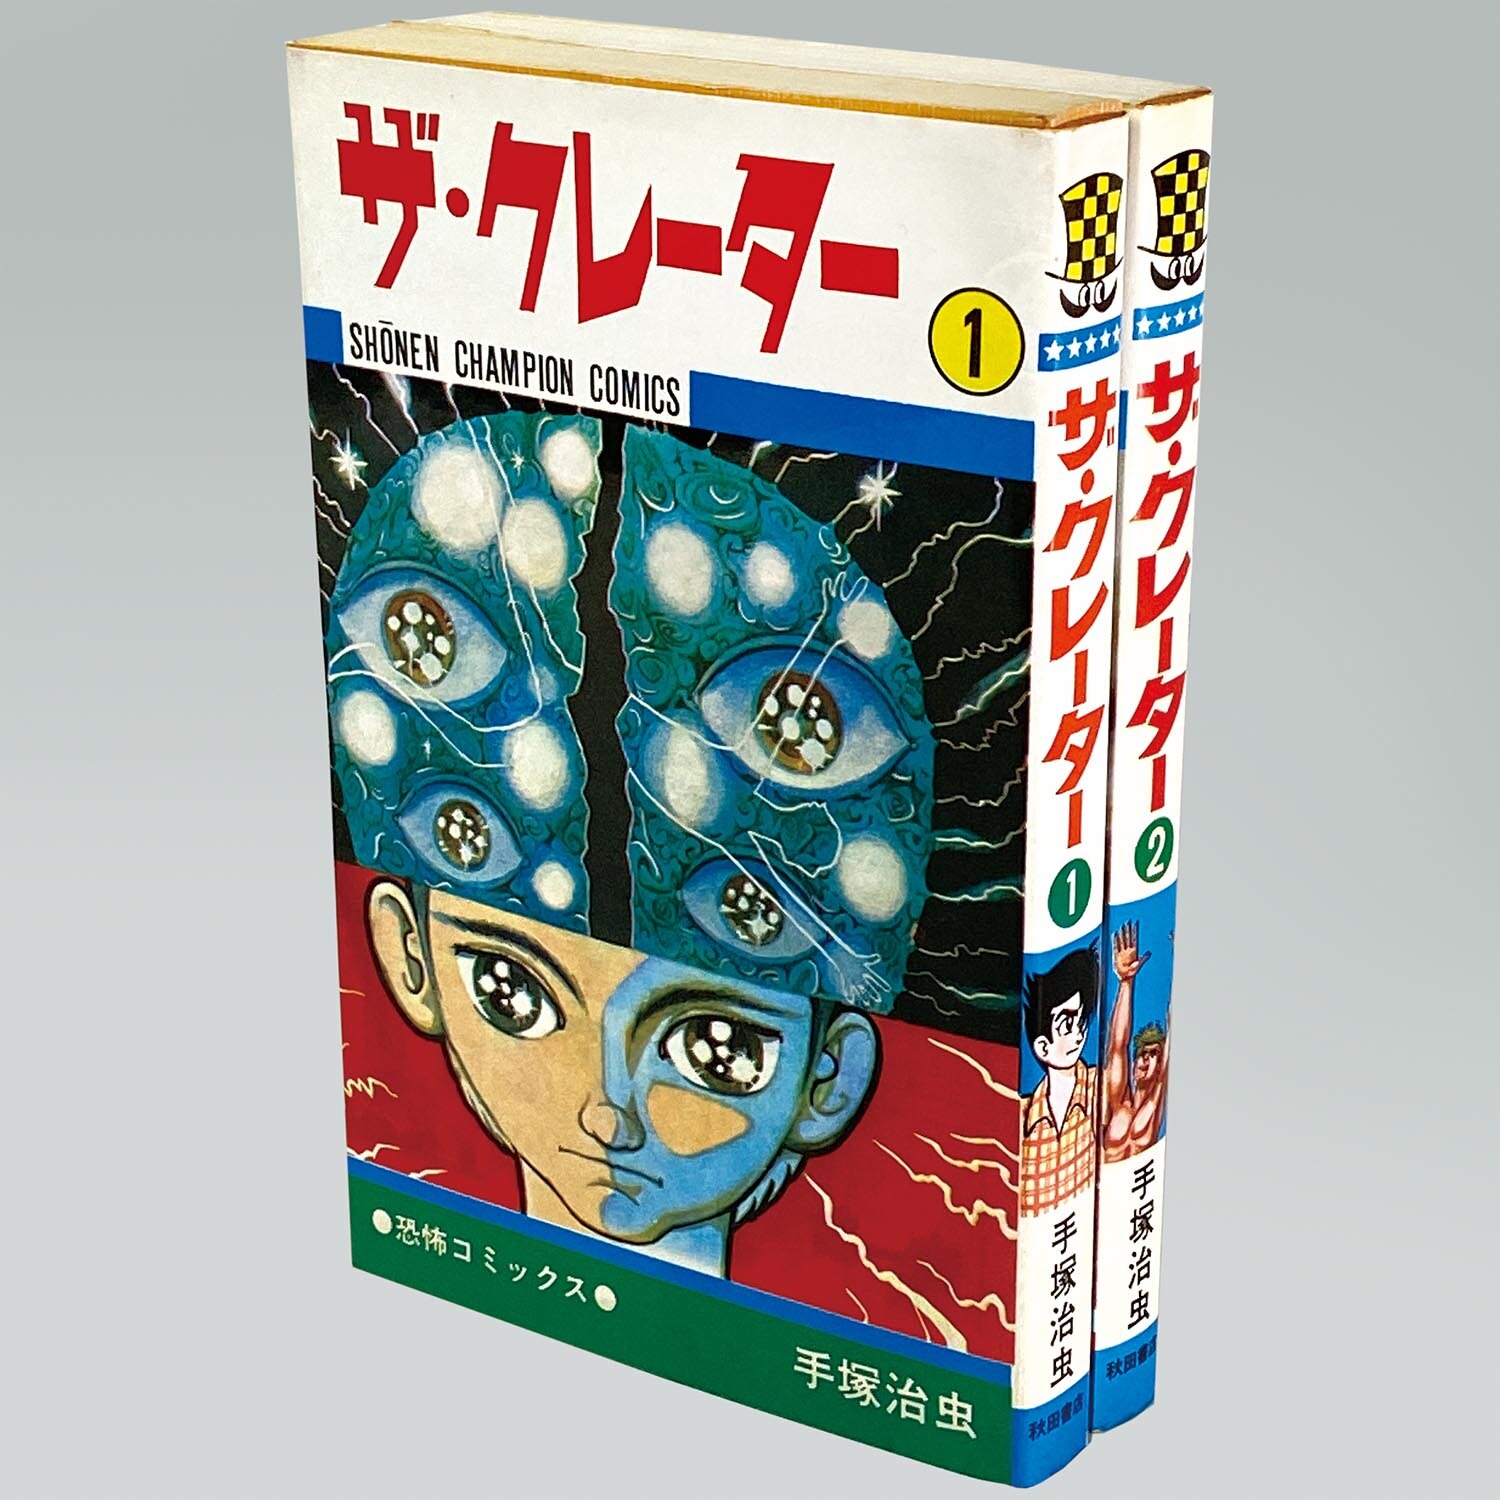 8415］ 少年チャンピオンコミックス/手塚治虫「ザ・クレーター 全2巻初版セット」